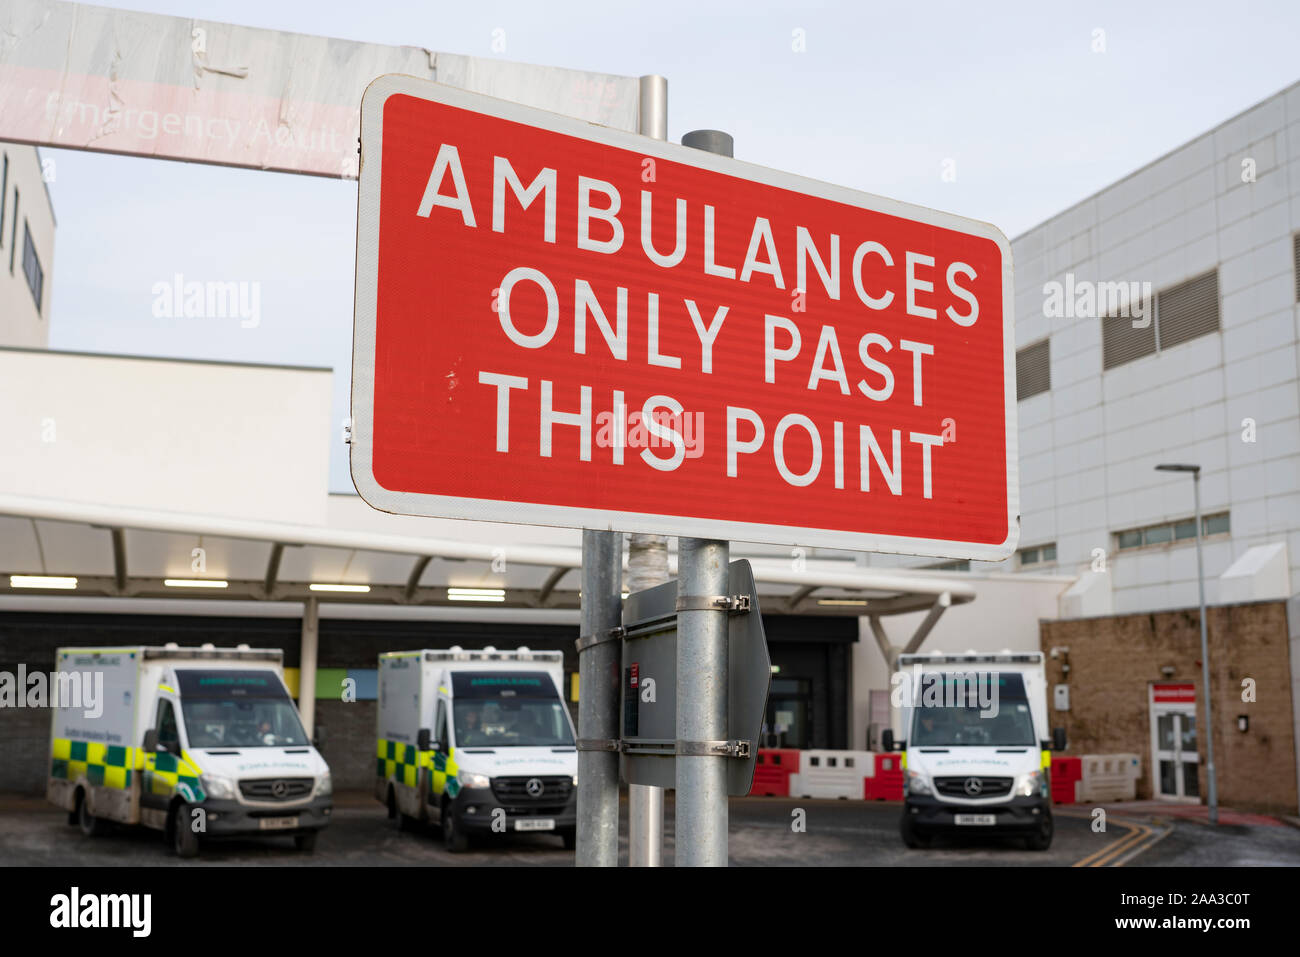 Externe Ansicht der Notfallstation in Edinburgh Royal Infirmary, Schottland, Großbritannien Stockfoto